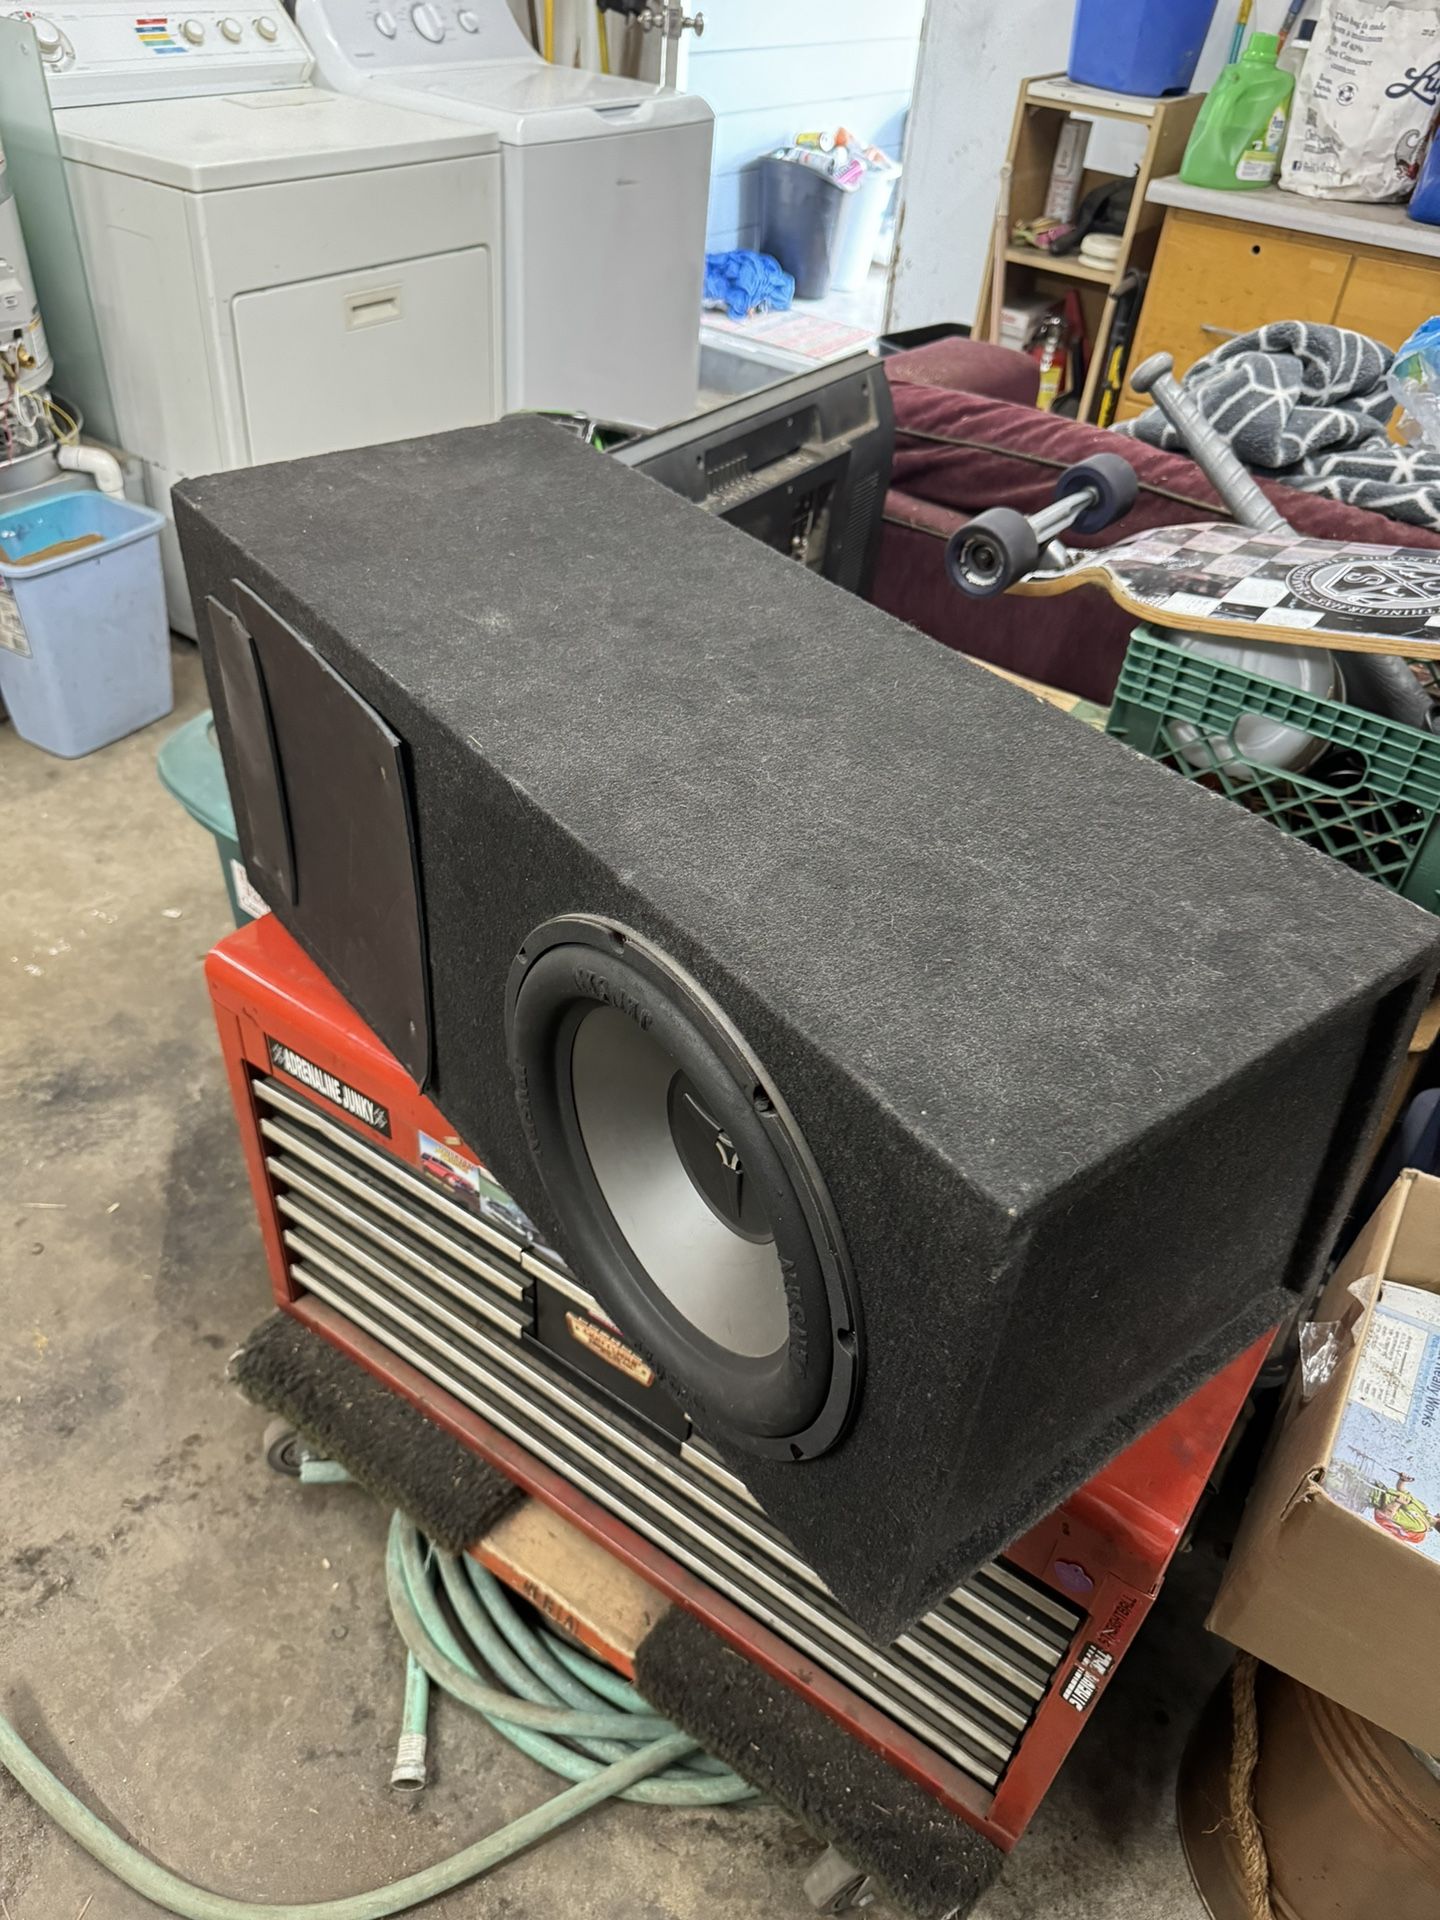 Speaker Box With 1 Speaker